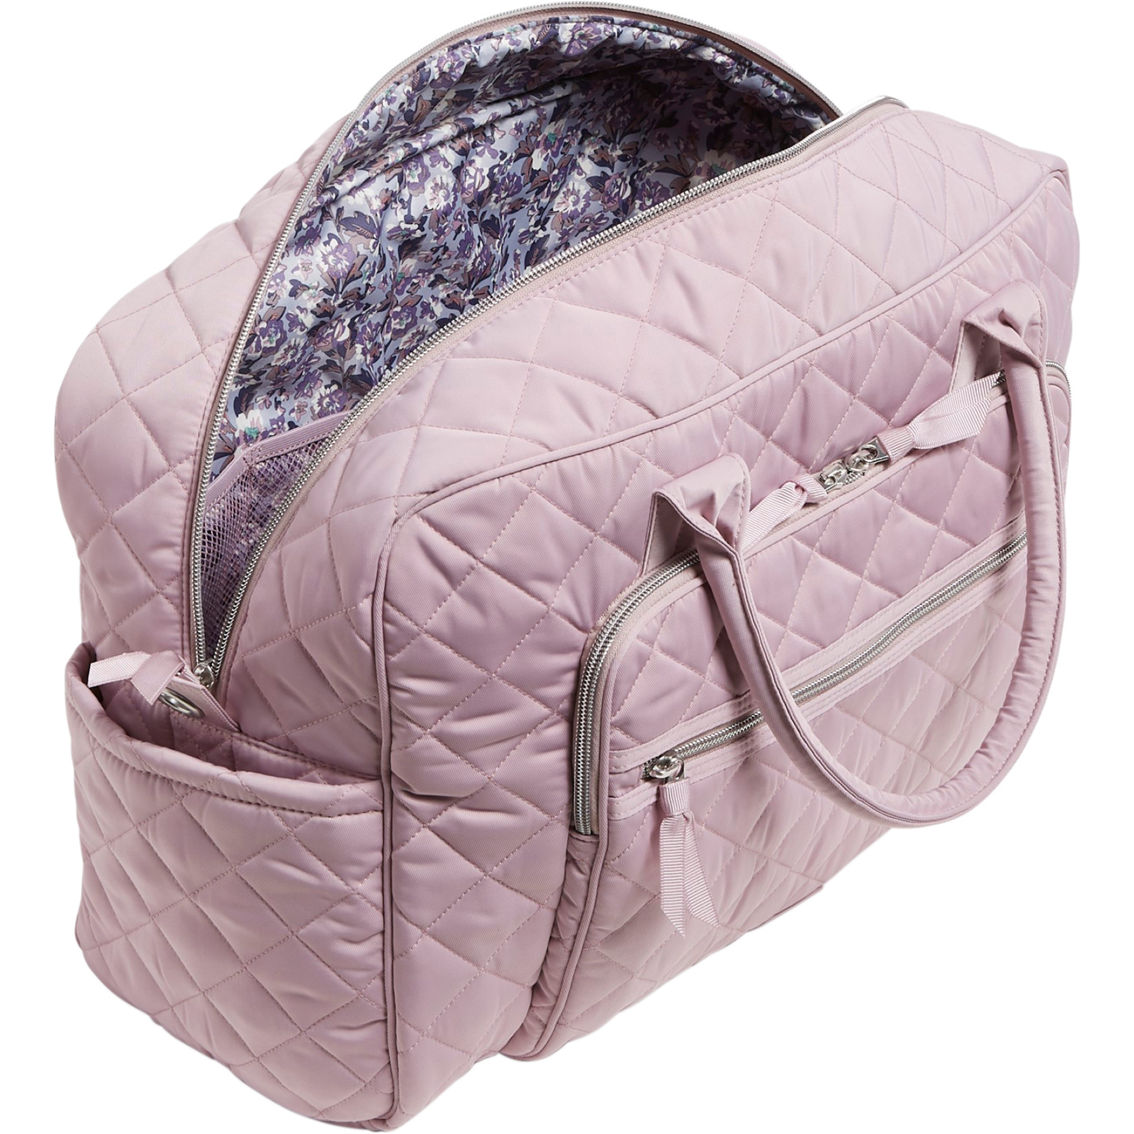 Vera Bradley Weekender Travel Bag, Hydrangea Pink - Image 2 of 3